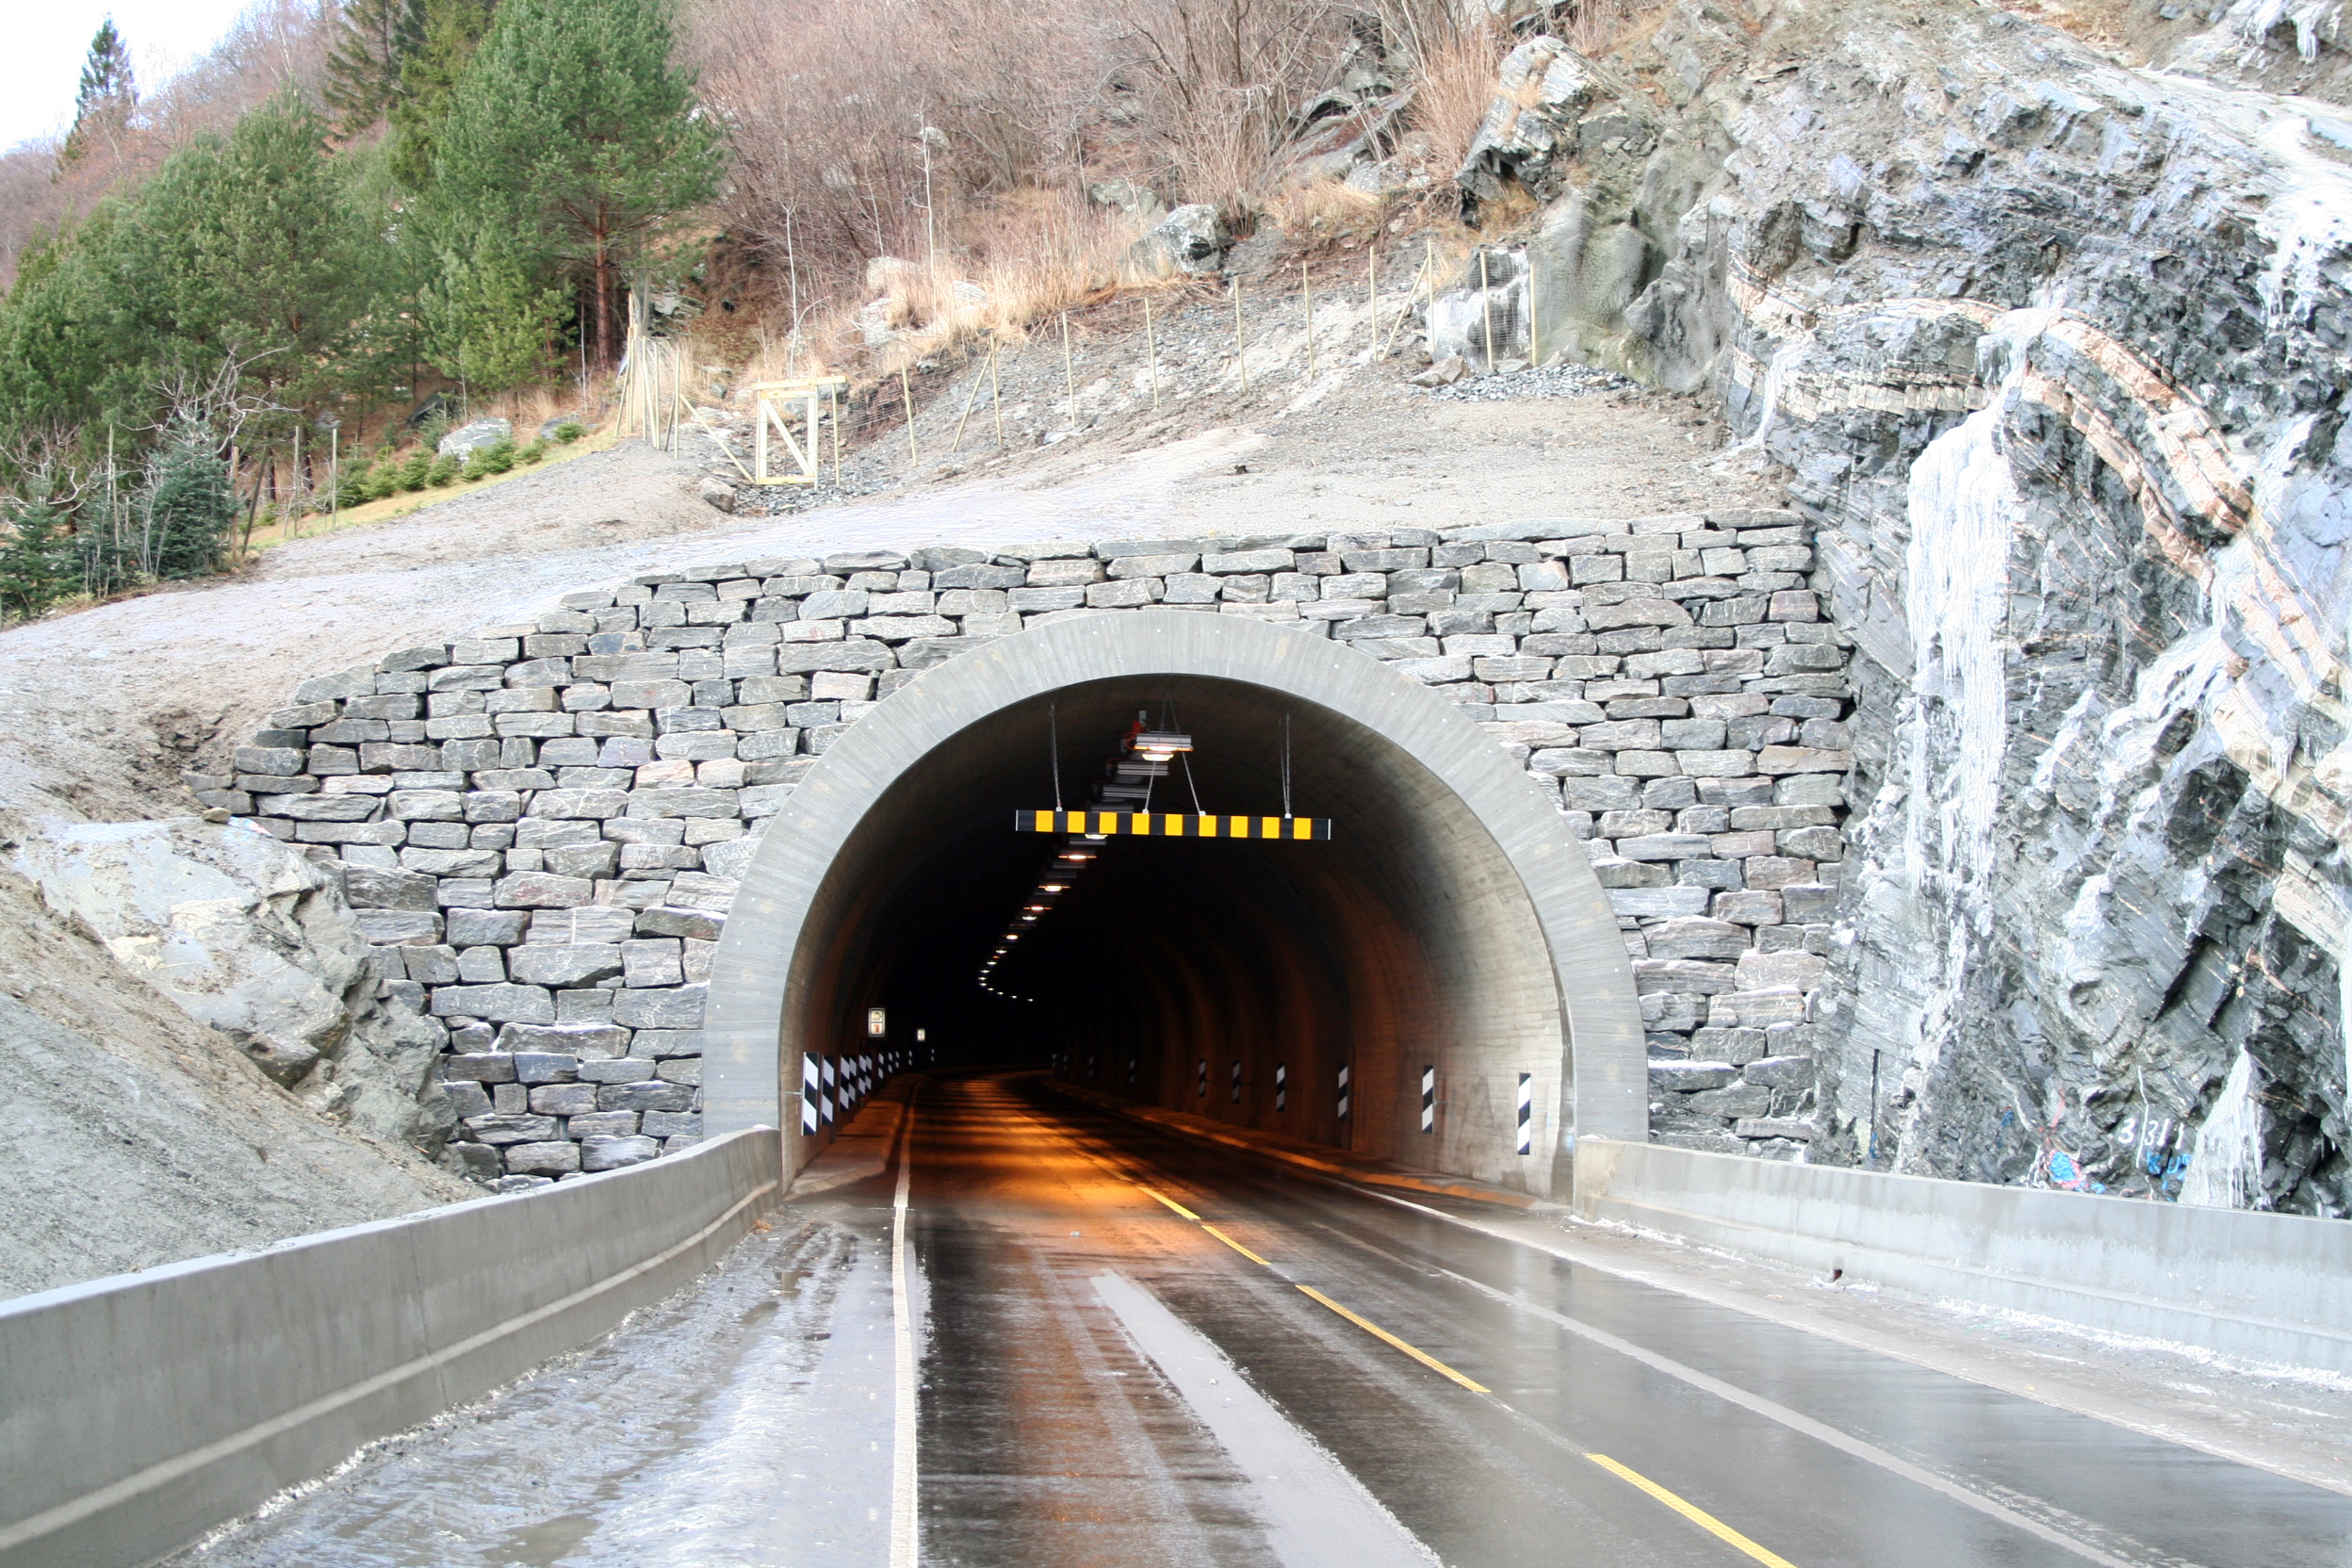   Tunnel, Fatlaberget   Statens vegvesen 